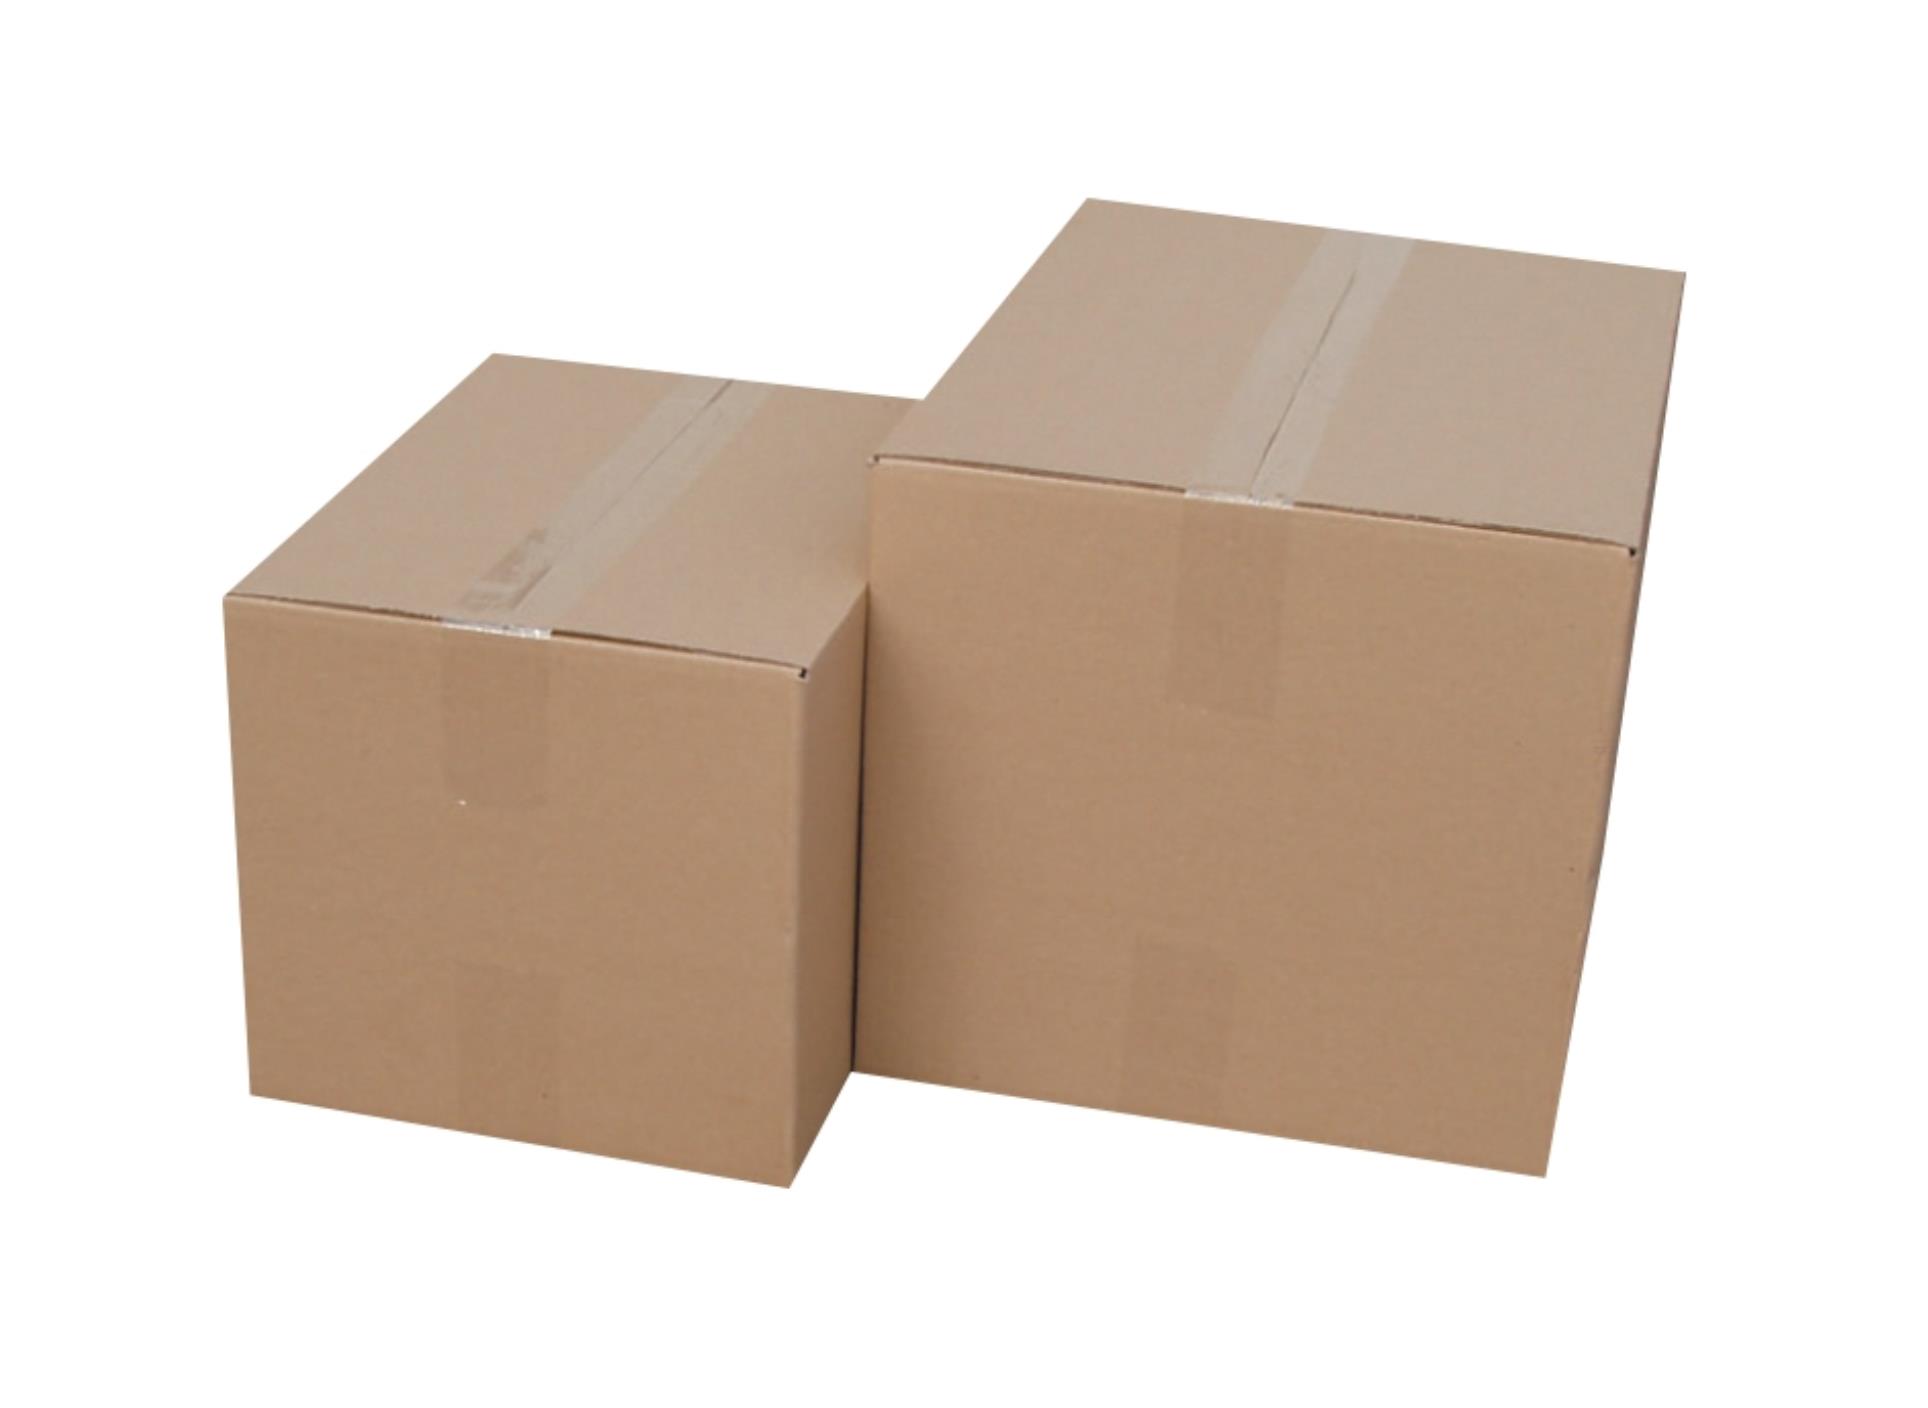 Krabice kartonové 3vrstvé - skladovací, 39,5 x 29 x 28 cm, 20 kg